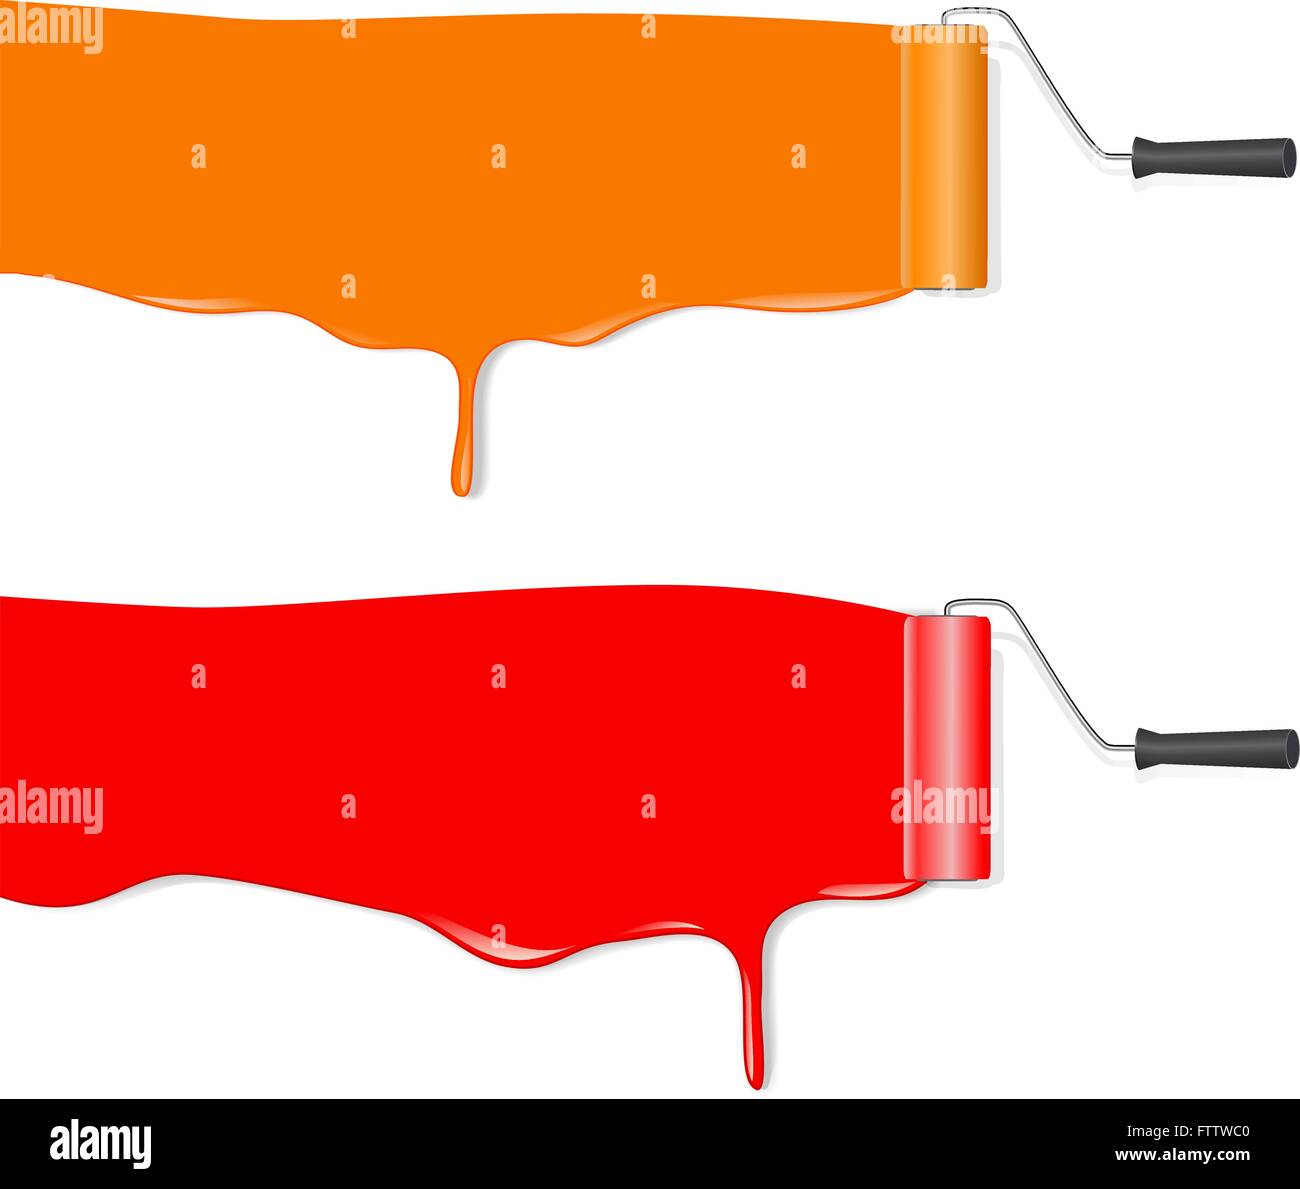 Bürstenrolle weißen Hintergrund orange und rote Banner übermalen. Vektor-illustration Stock Vektor